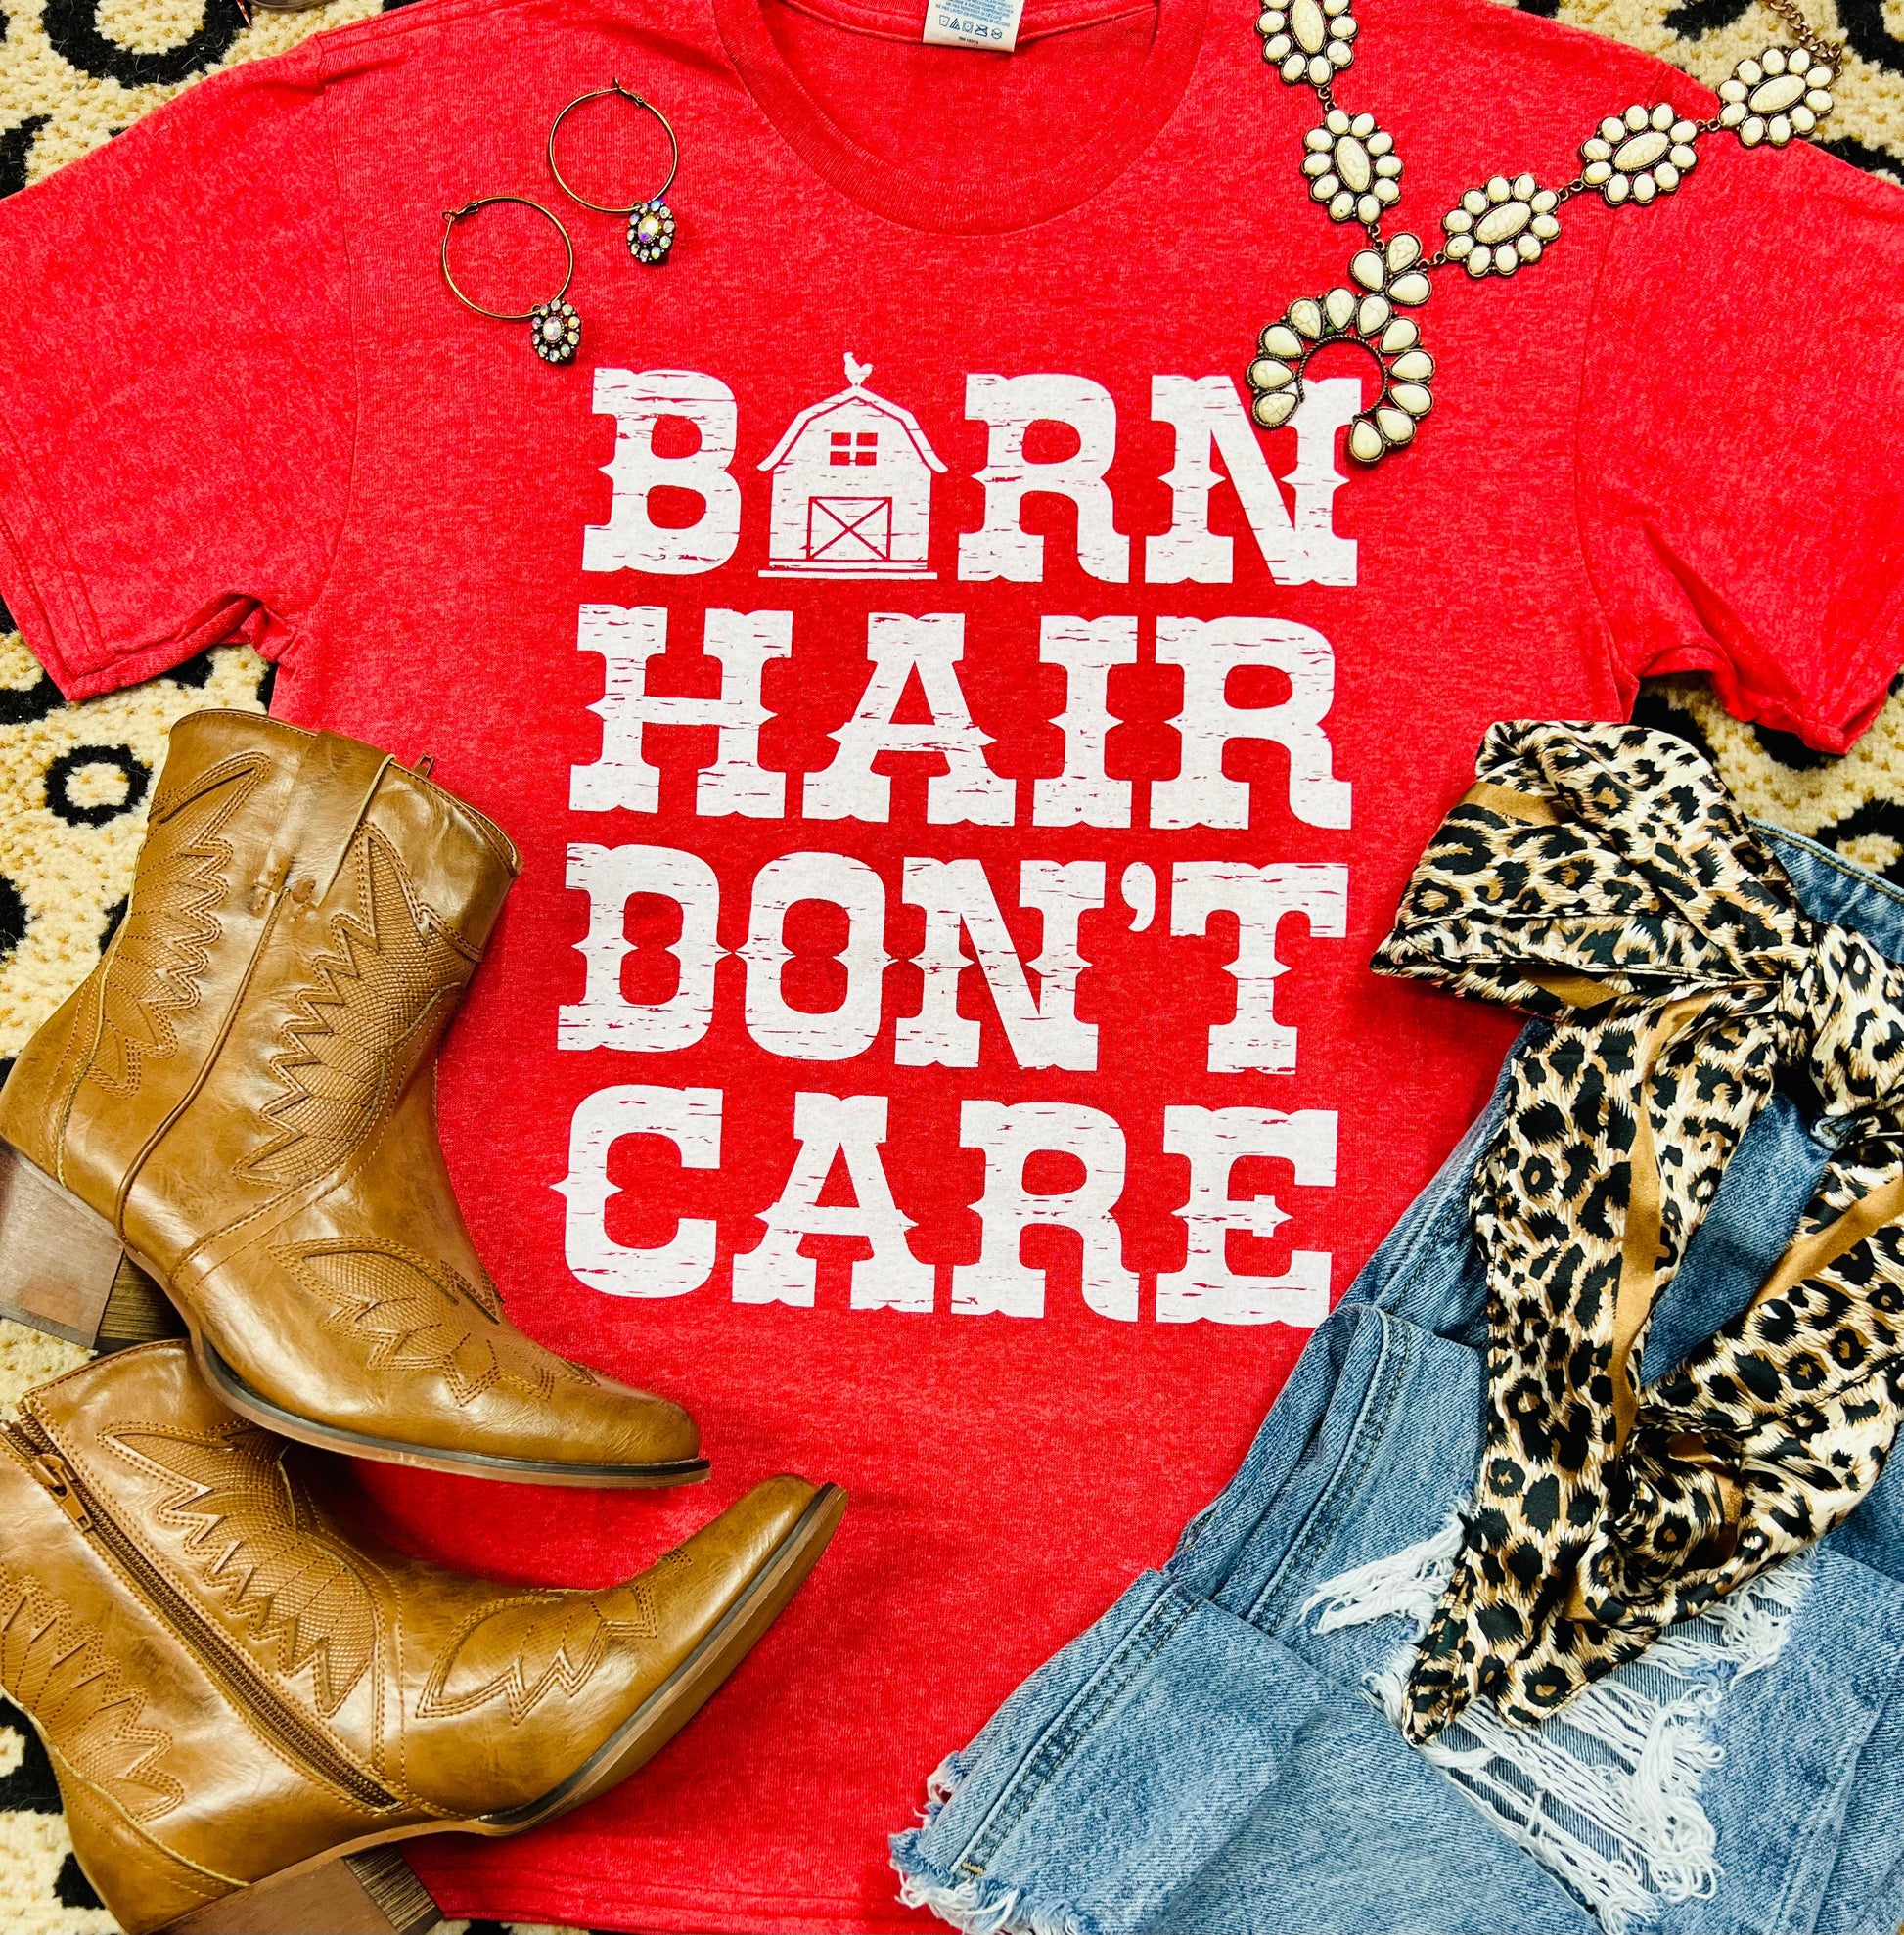 Barn Hair Don’t Care Tee